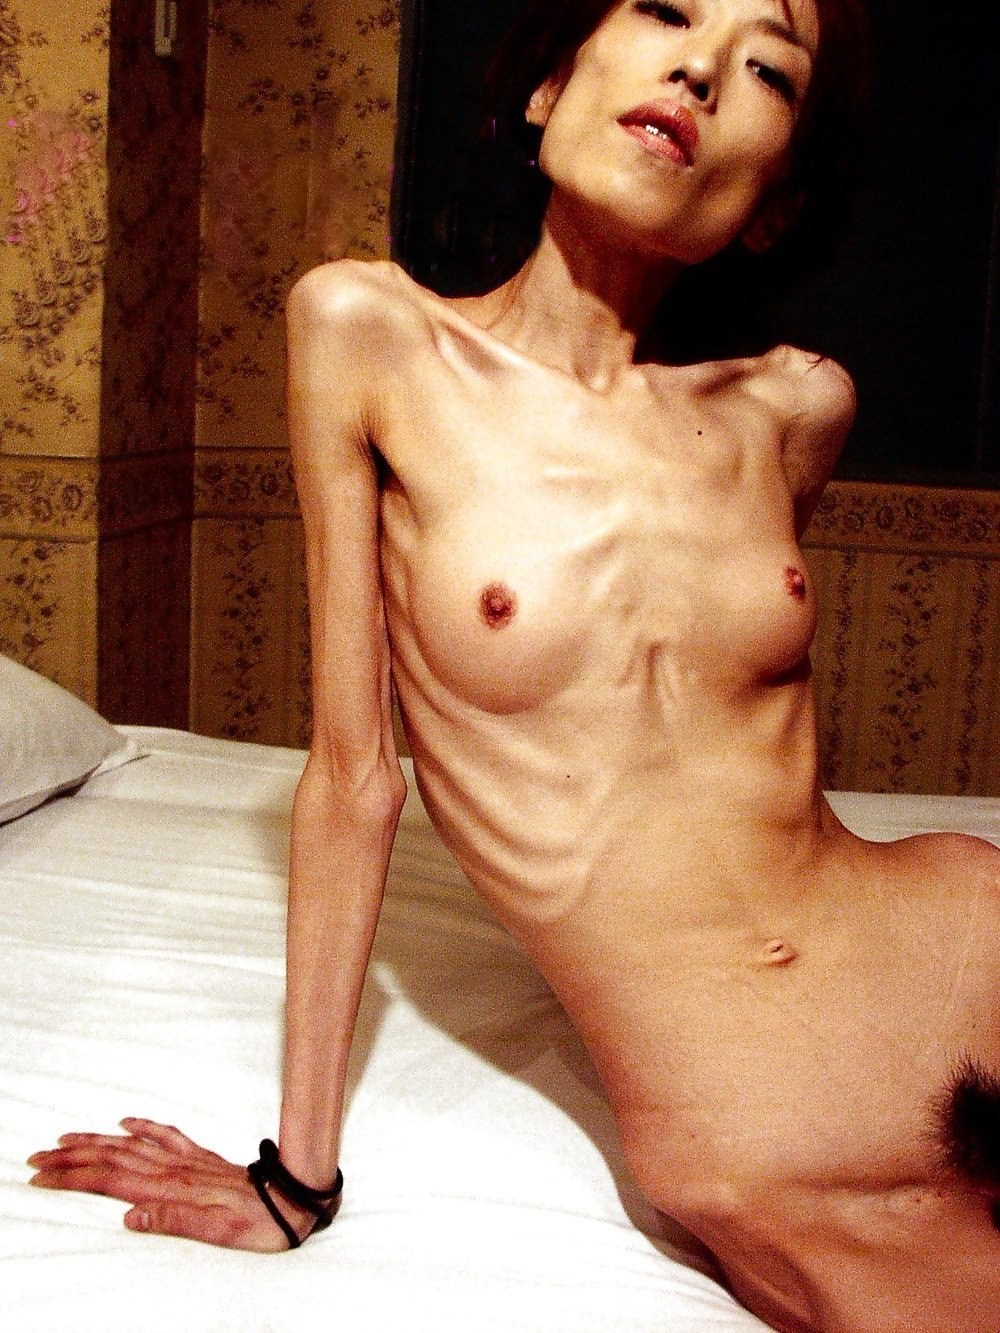 Anorexic Asain Porn - Anorexia Girls Porn (89 photos) - motherless porn pics